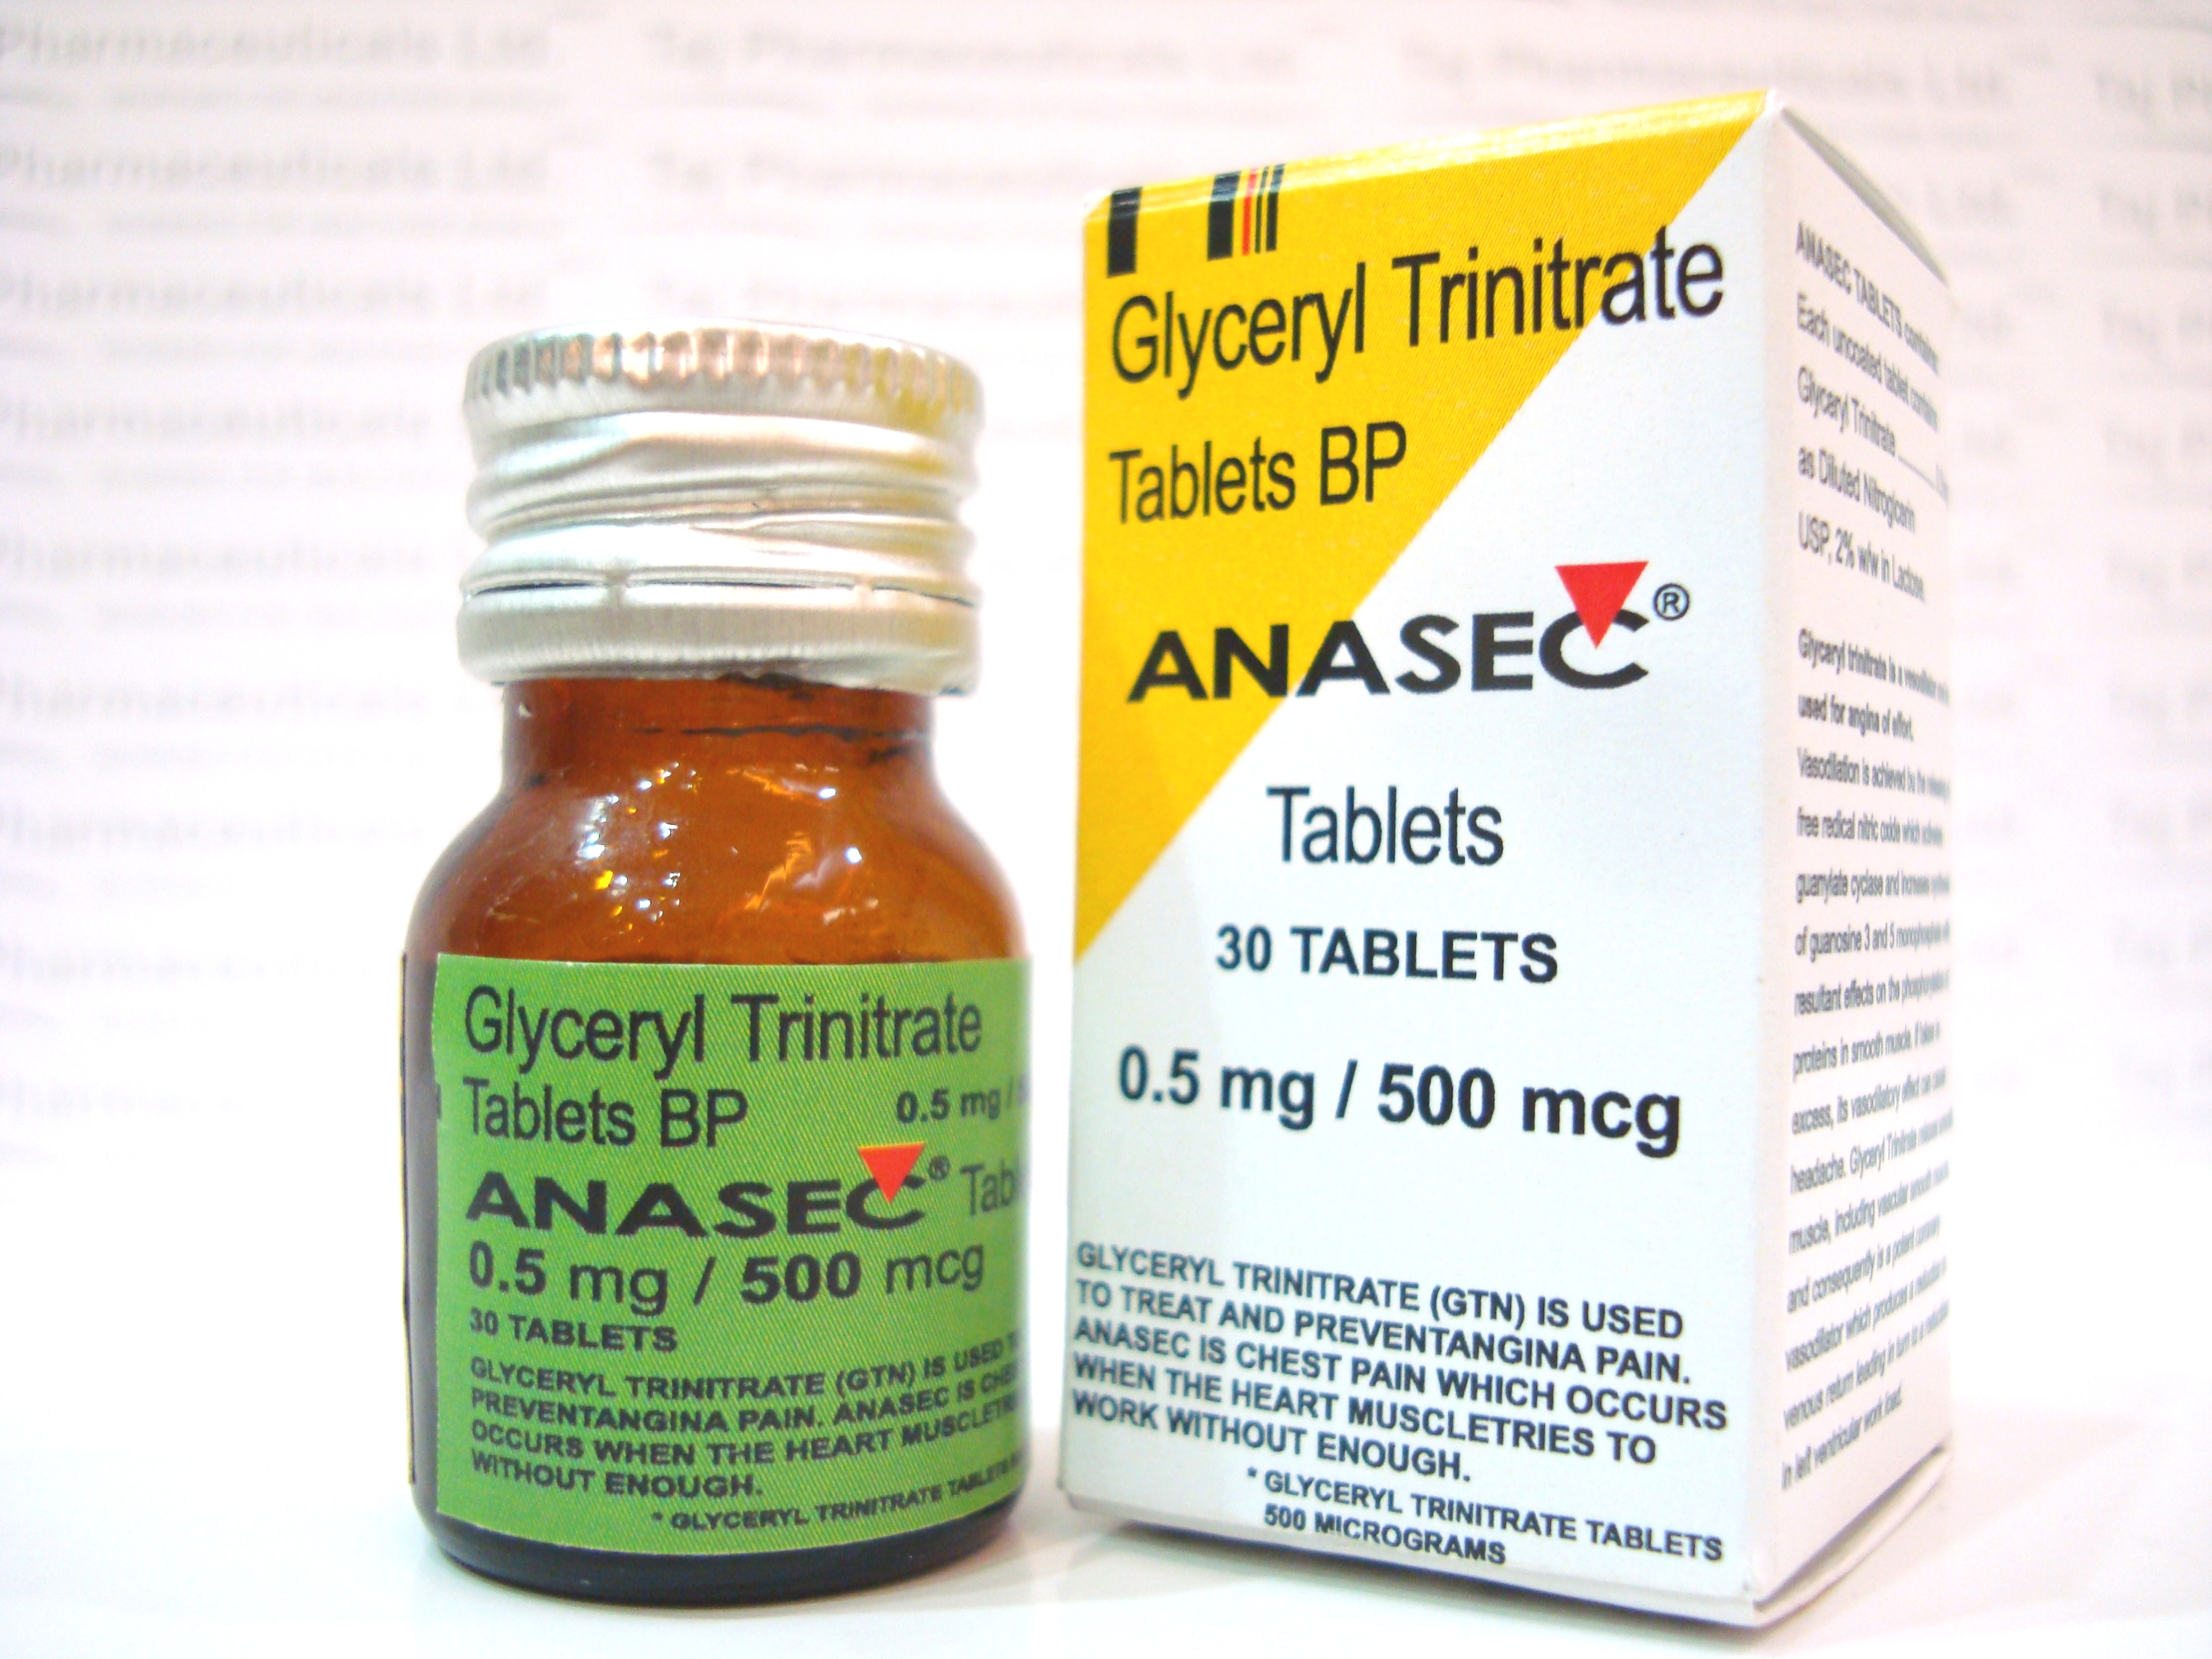 Anasec Glyceryl Trinitrate Tablets 500 micrograms